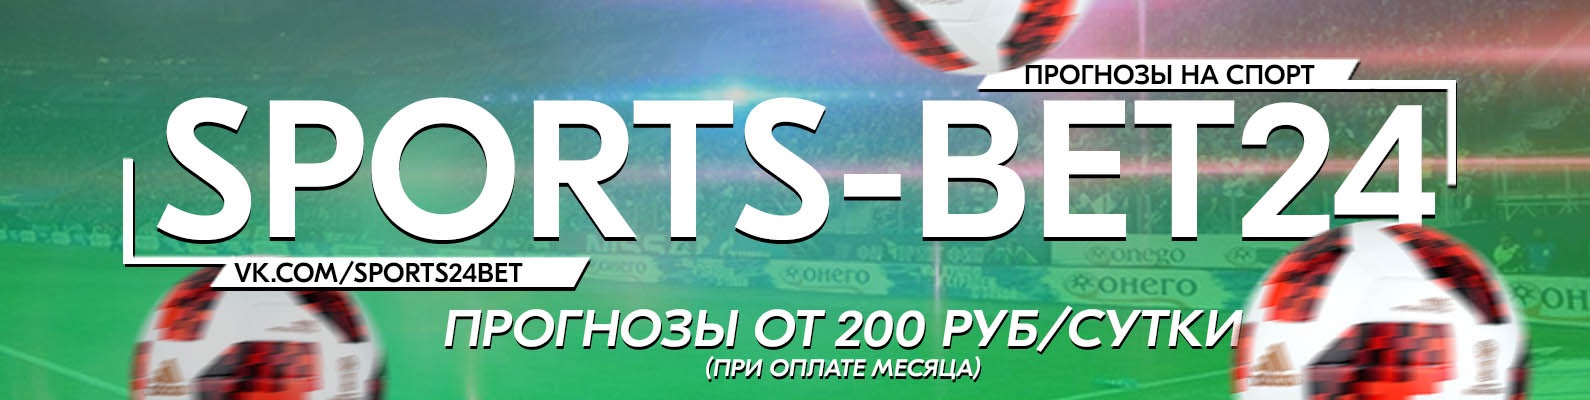 Sports-bet24 ru